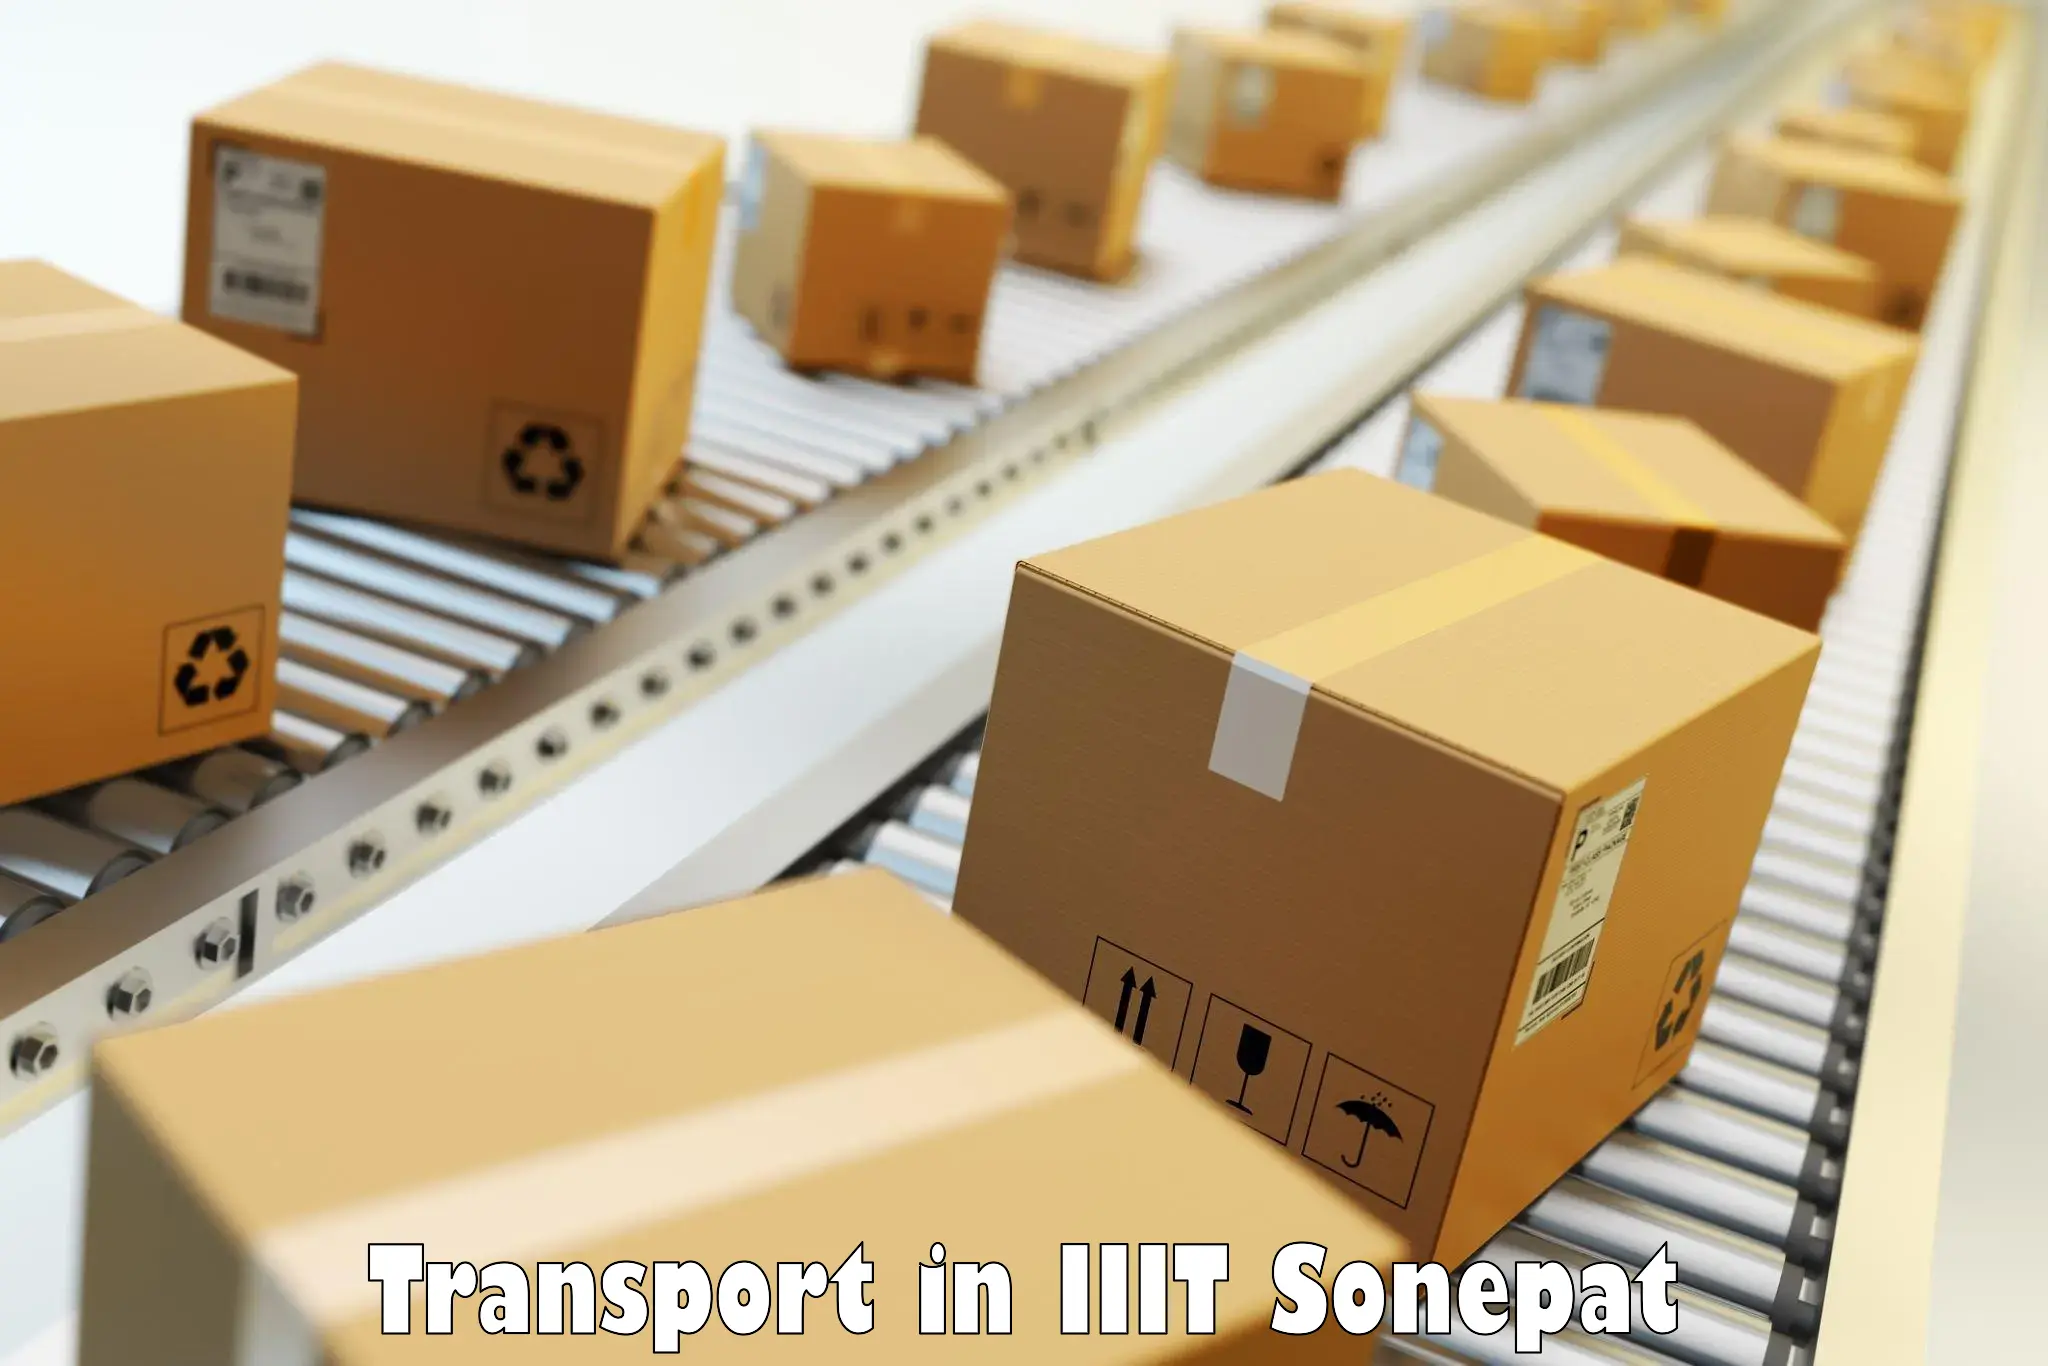 Online transport service in IIIT Sonepat